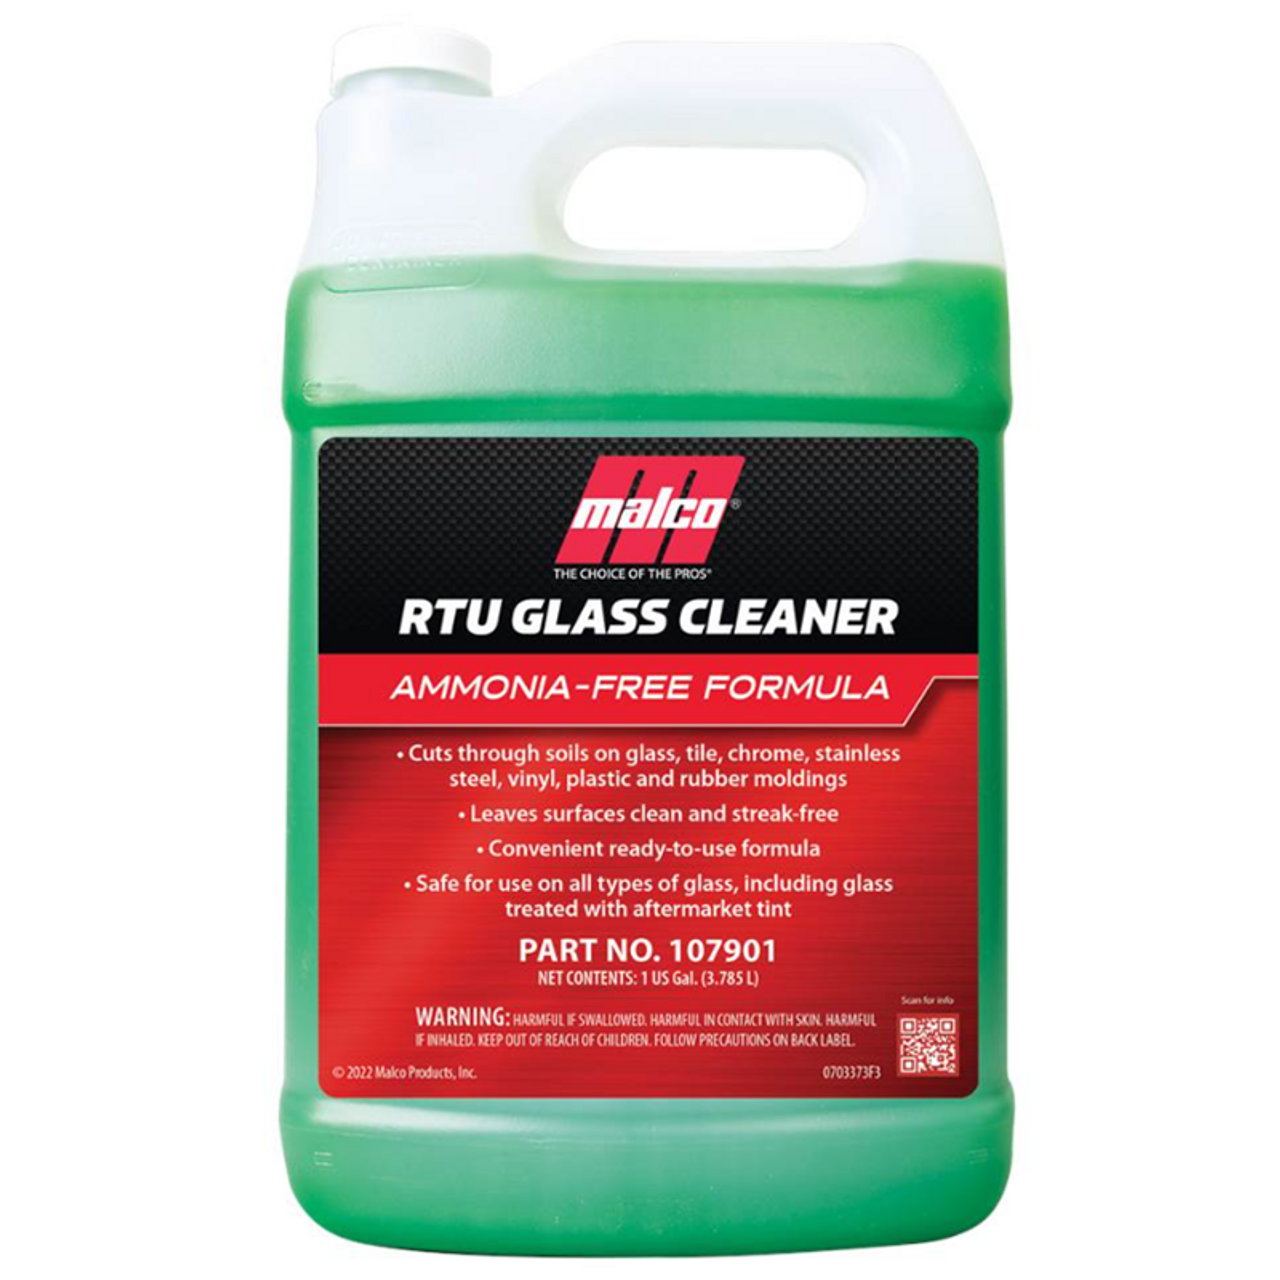 RTU Glass Cleaner